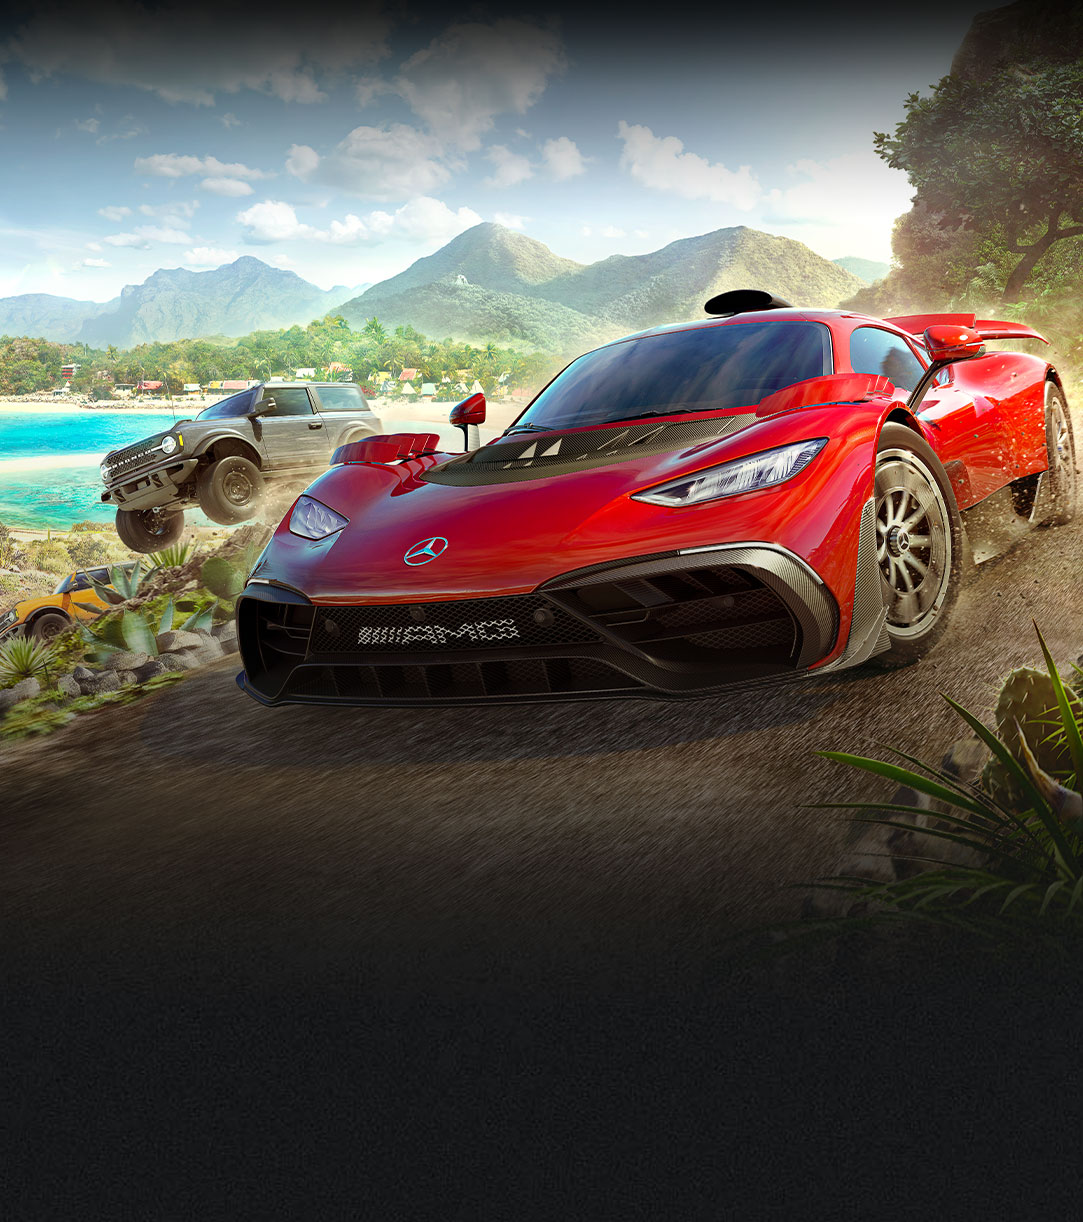 Biler fra Forza Horizon 5, der kører hurtigt på en grusvej ved vandet og mange planter.